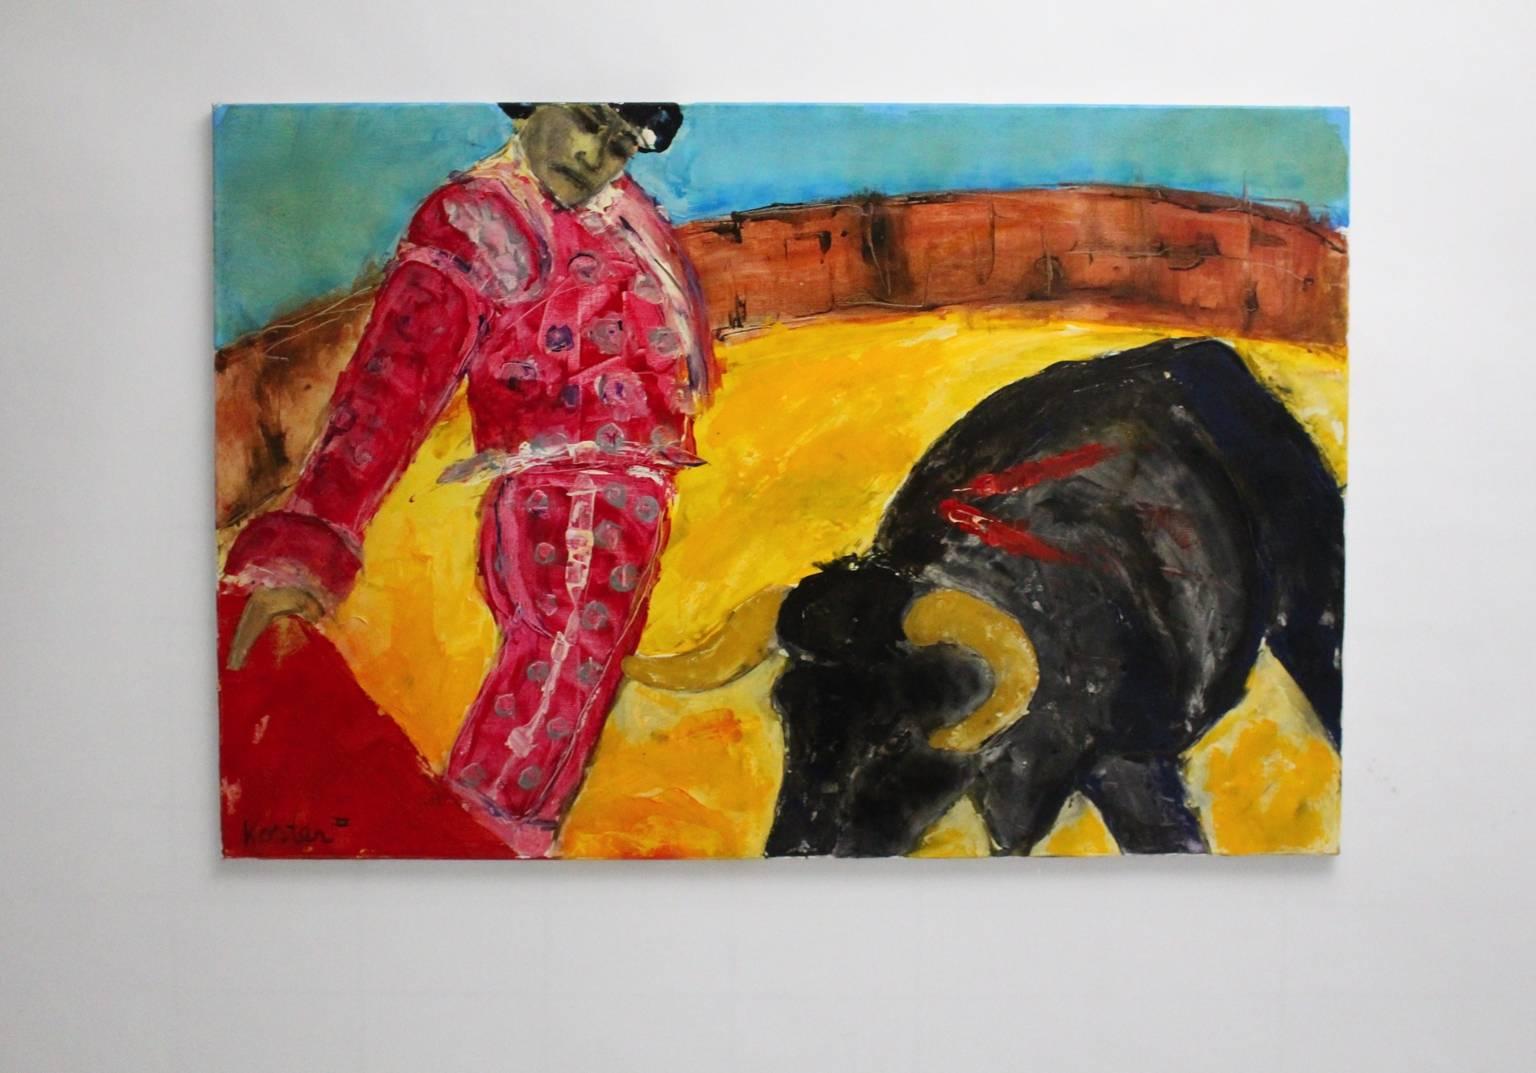 Modernes mehrfarbiges Ölgemälde aus den 1980er Jahren von Koster.
Das Motiv zeigt einen spanischen Torero und einen Stier in der Arena.
sehr guter Zustand
ca. Maße:
Breite 150 cm
Höhe 100 cm
Tiefe 2,5 cm